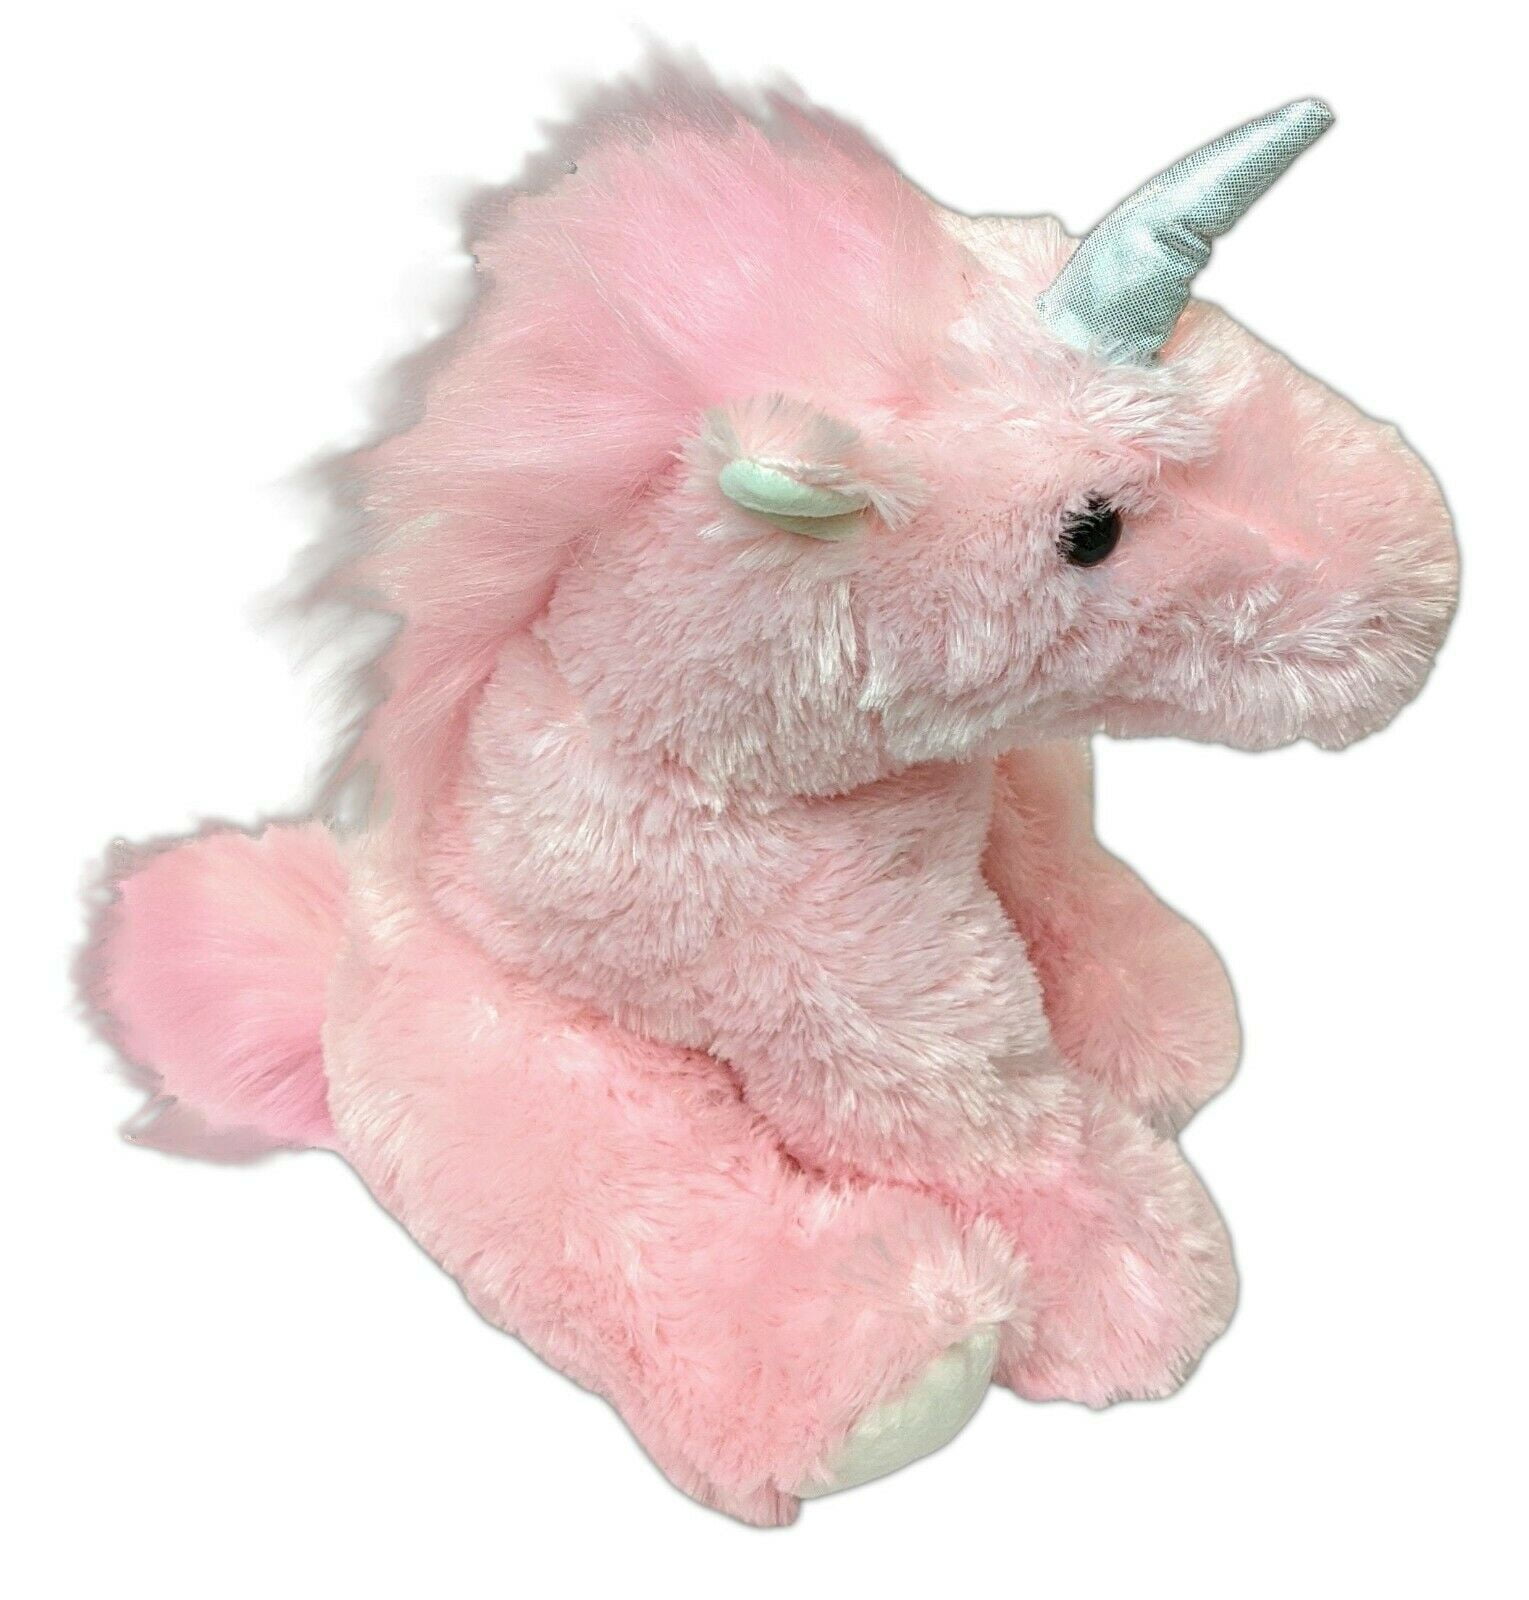 50315 Pink UNICORN Stuffed Animal Plush by Aurora 14" Tall 